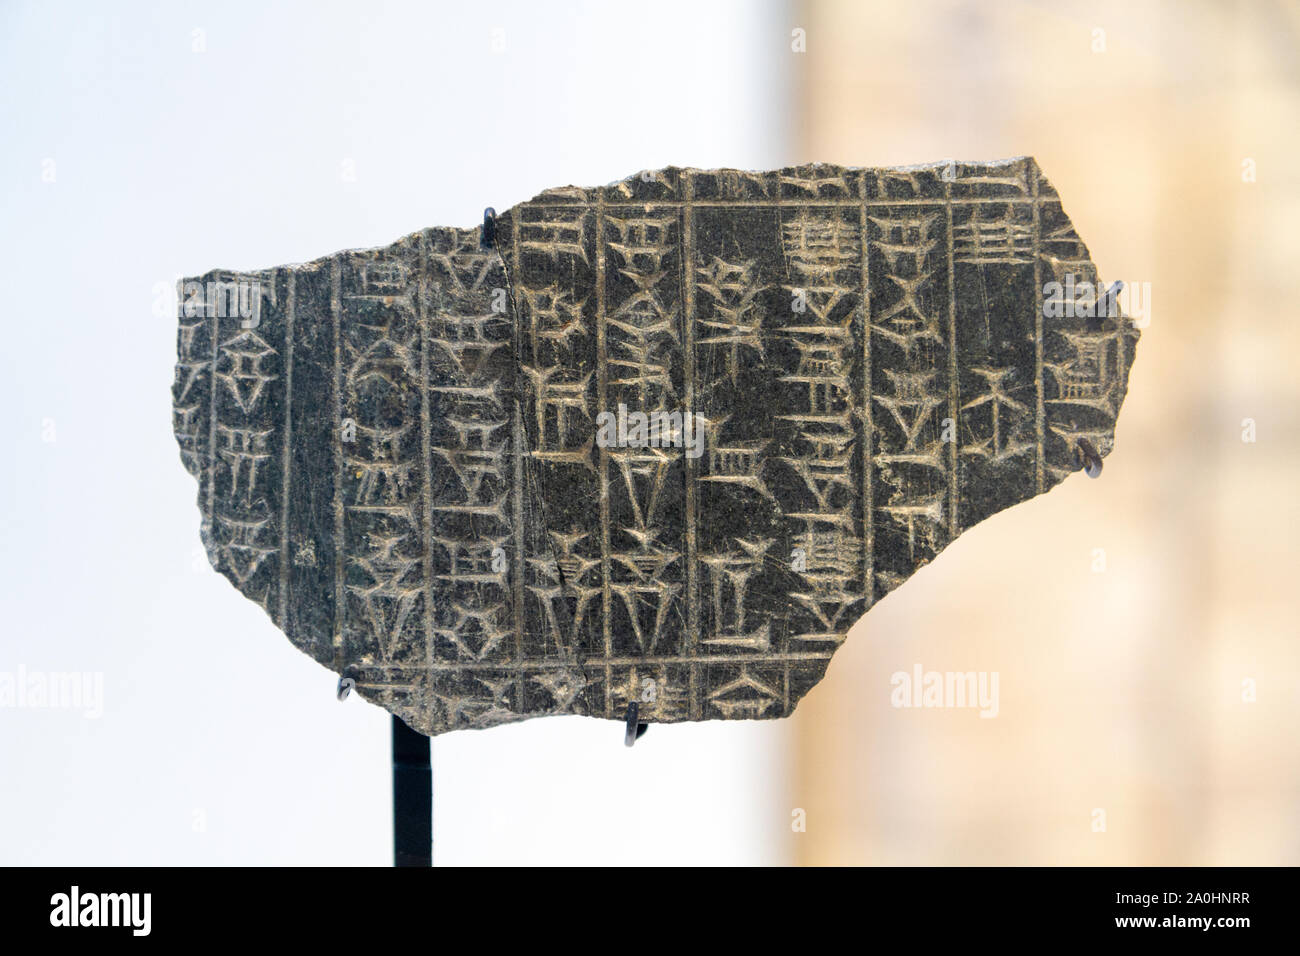 Die Bruchstücke der Stele (e) mit Keilschrift bezeichnet: Auszüge aus dem Code von König Hammurabi von Babylon (1792-1750 v. Chr.). Um 1750 v. Chr.. Basalt. Stockfoto